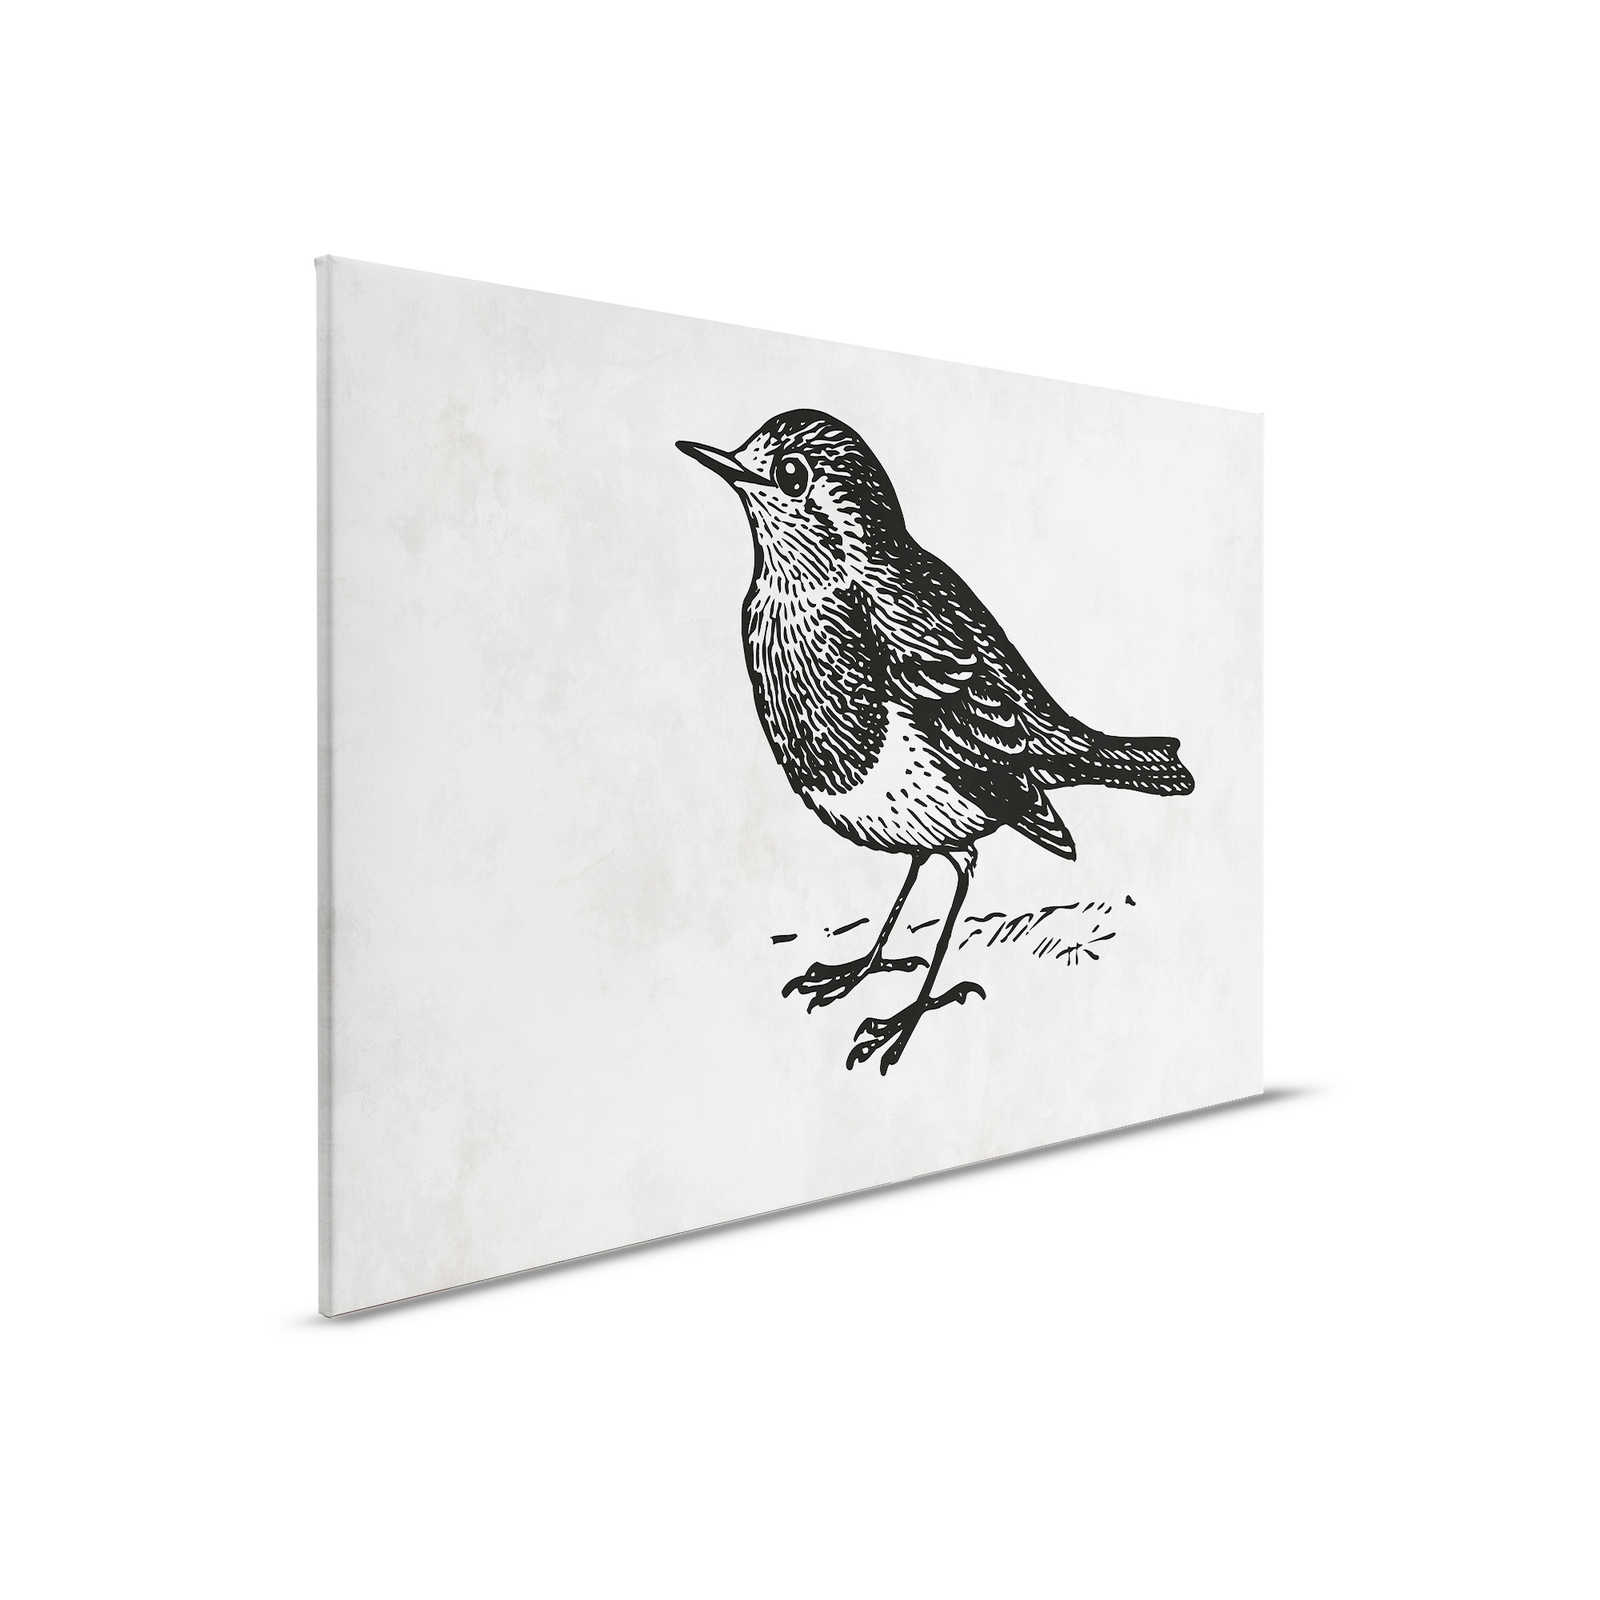 Zwart-wit canvas schilderij met vogel - 0,90 m x 0,60 m
